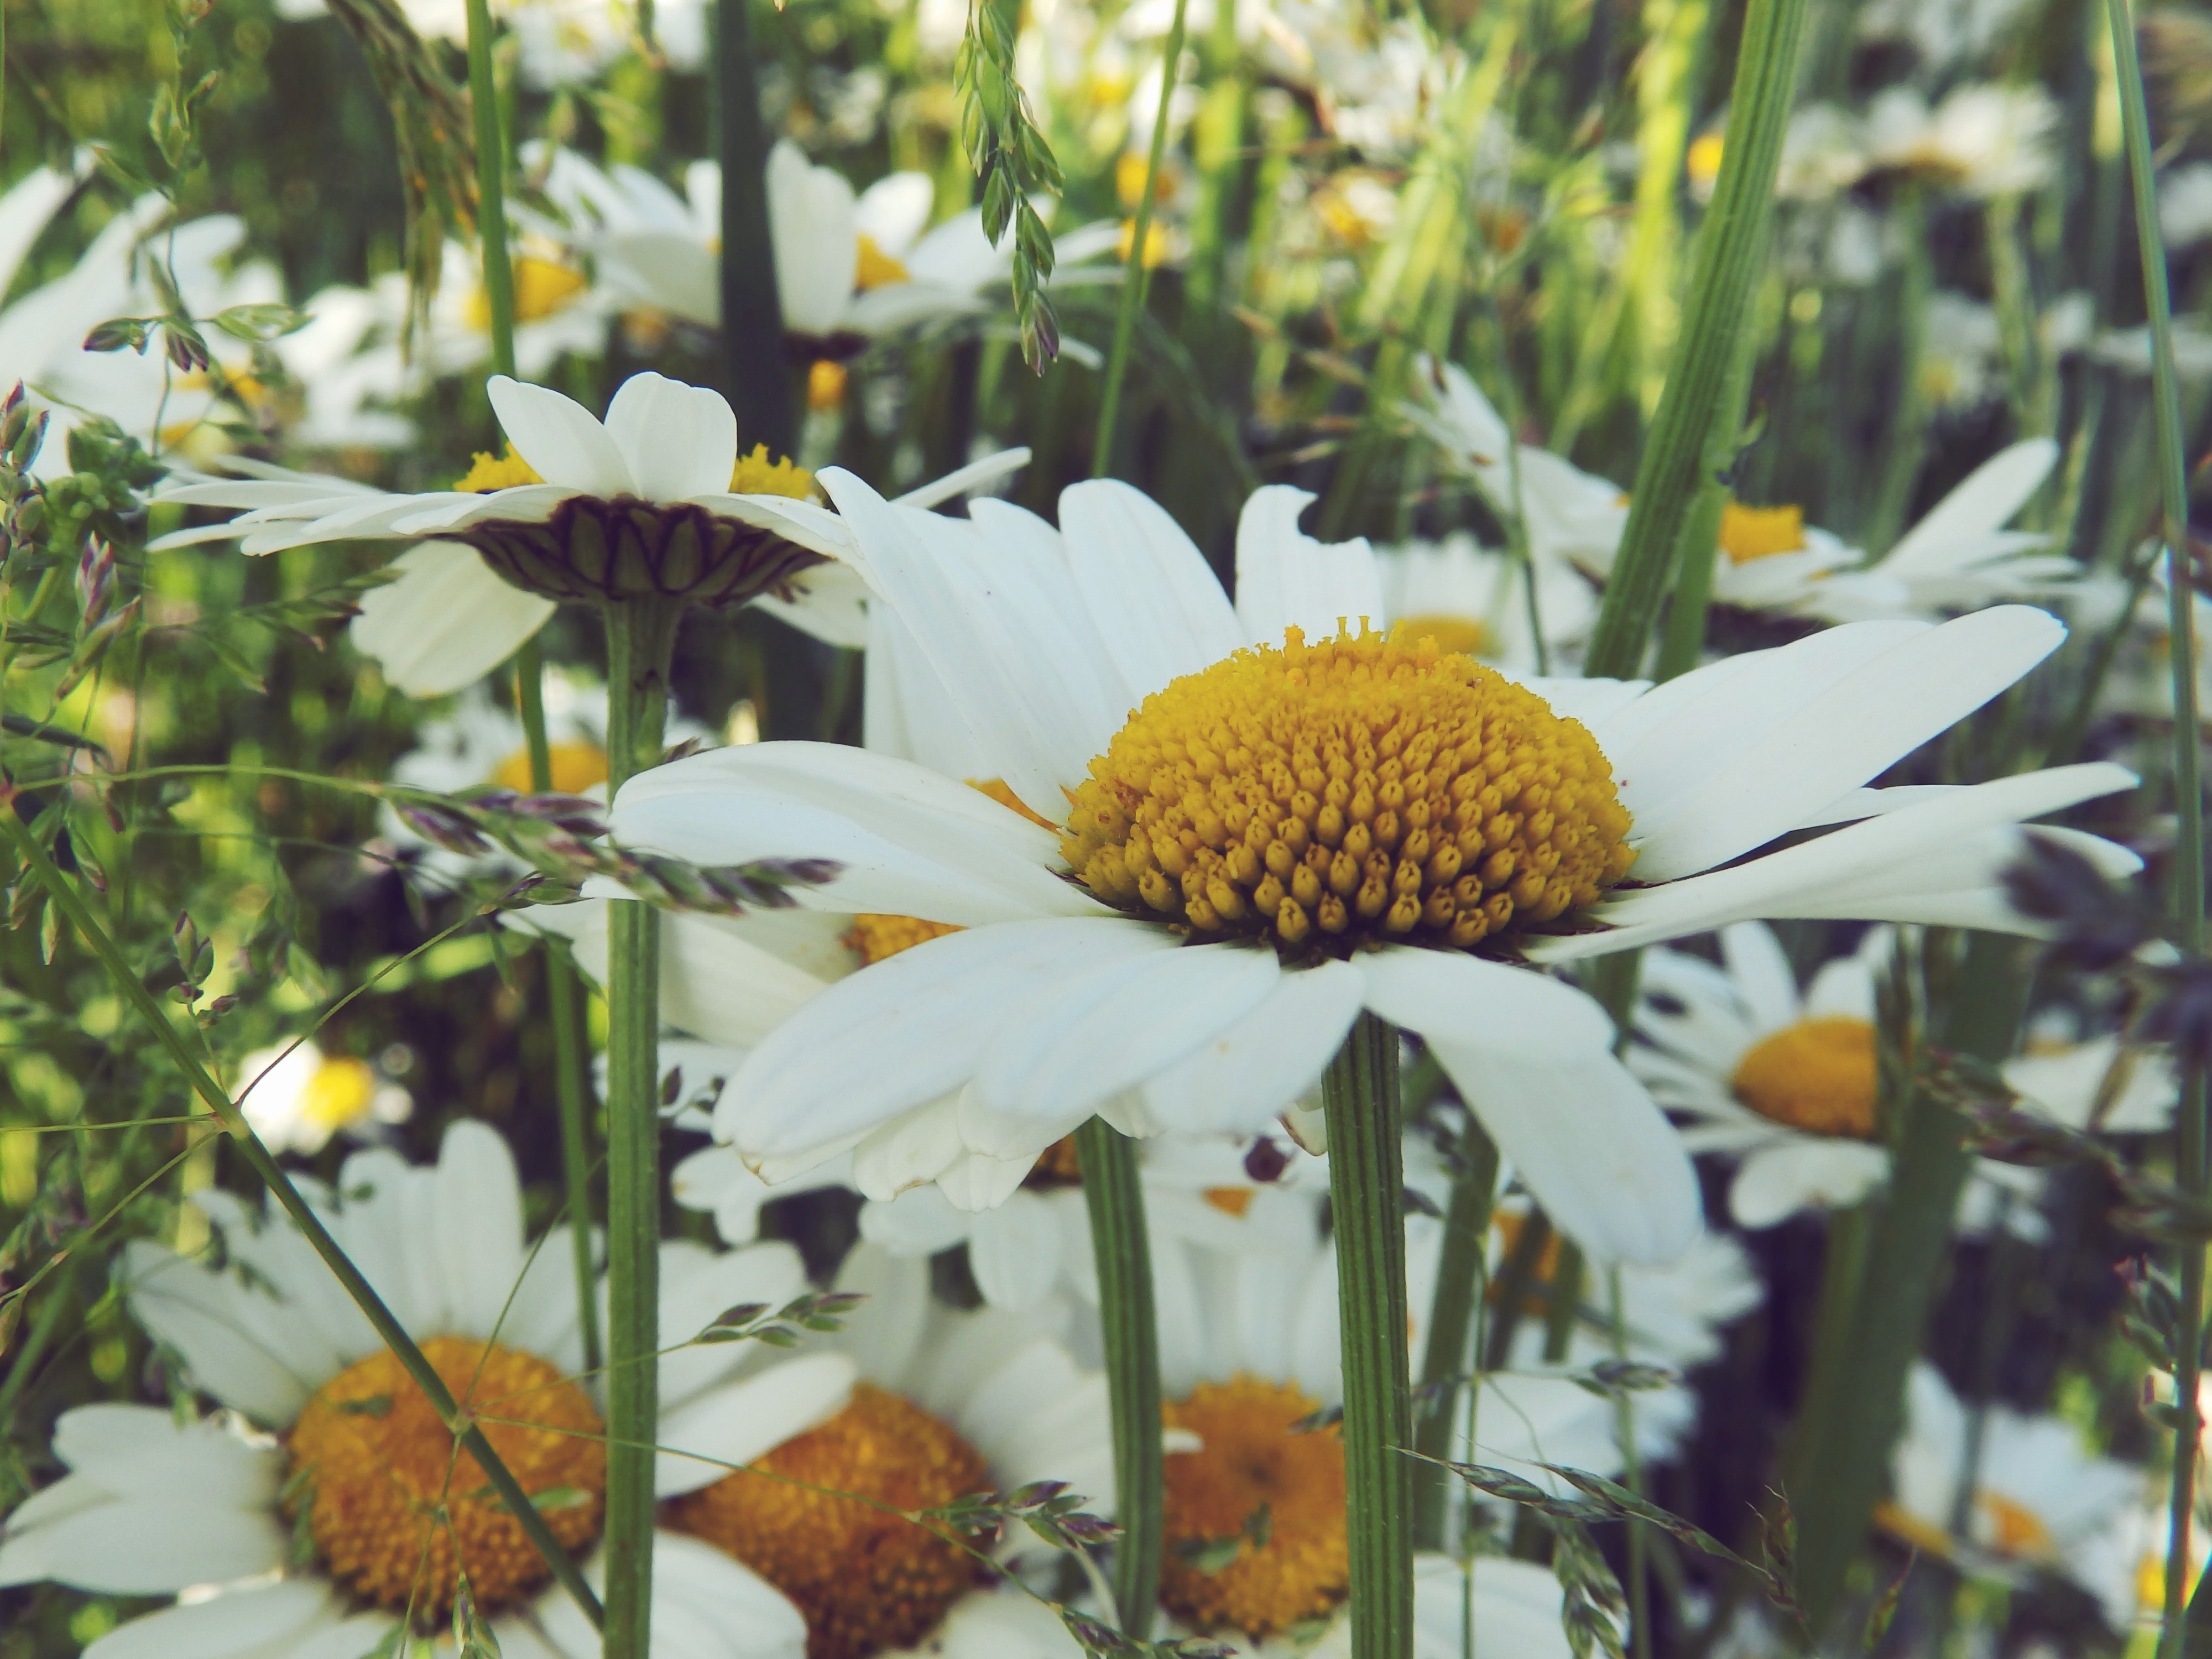 Wildflowers of daisies